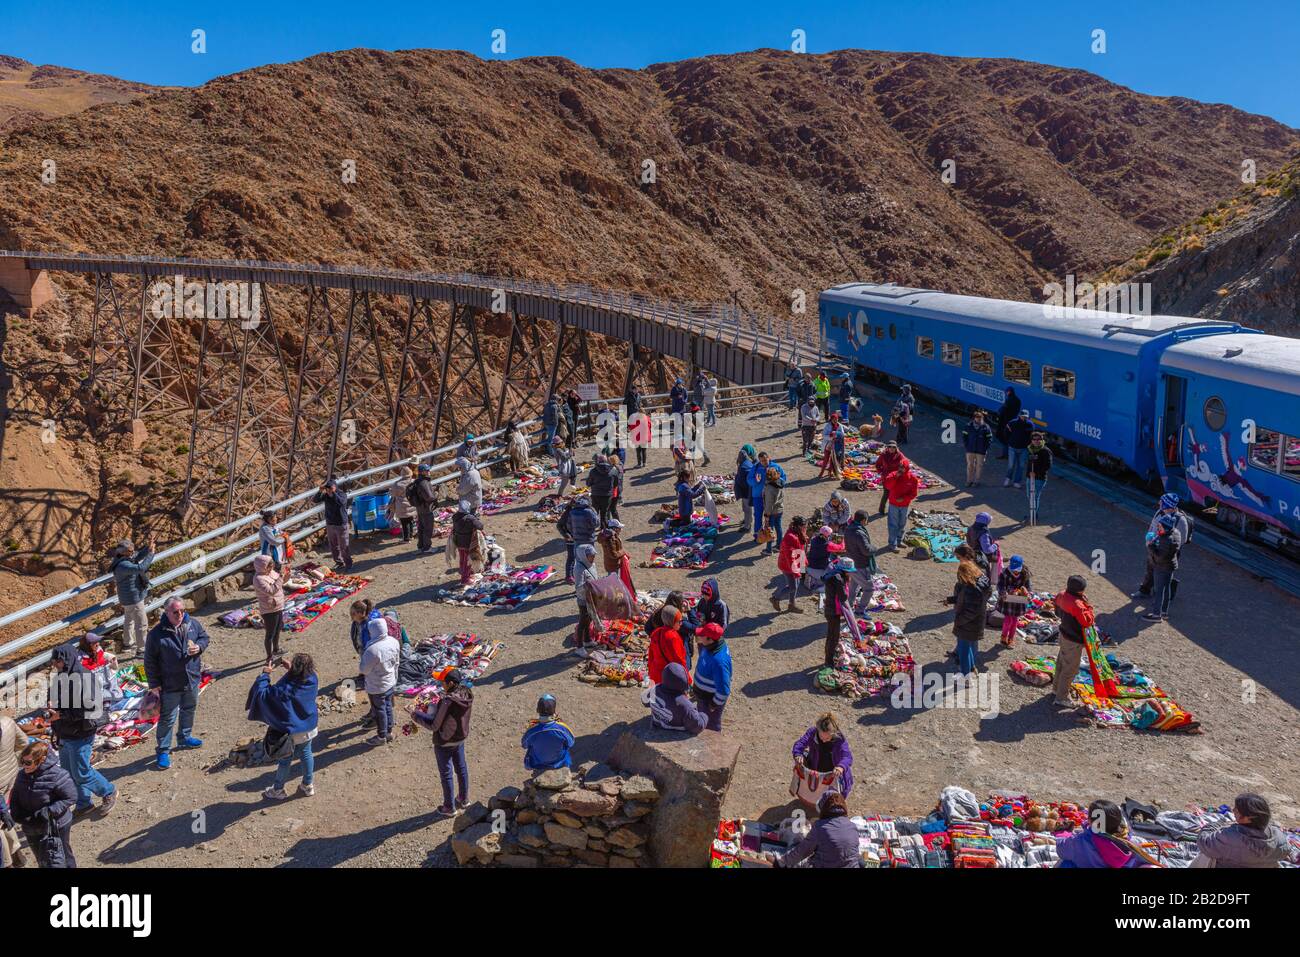 Markt am 'Viaducto La Polvorilla', 4200m als, Endstation der 'Tren a las Nubes', Provinz Salta, Anden, NW Argentinien, Lateinamerika Stockfoto